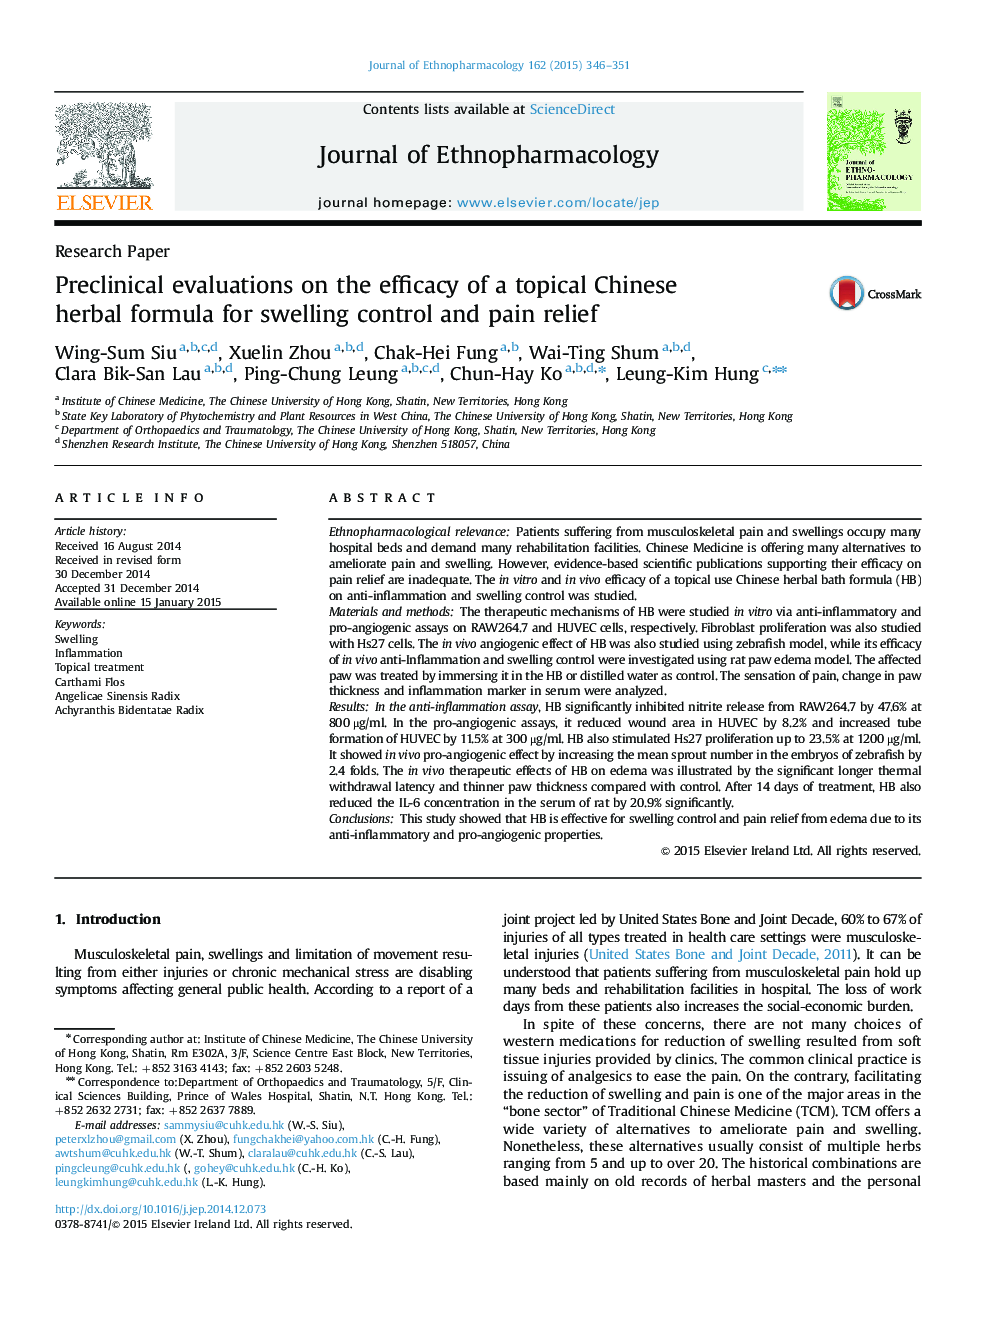 مقاله پژوهشی مقیاس های ارزیابی بالینی بر اثربخشی فرمول گیاهی موضعی چینی برای کنترل تورم و تسکین درد 